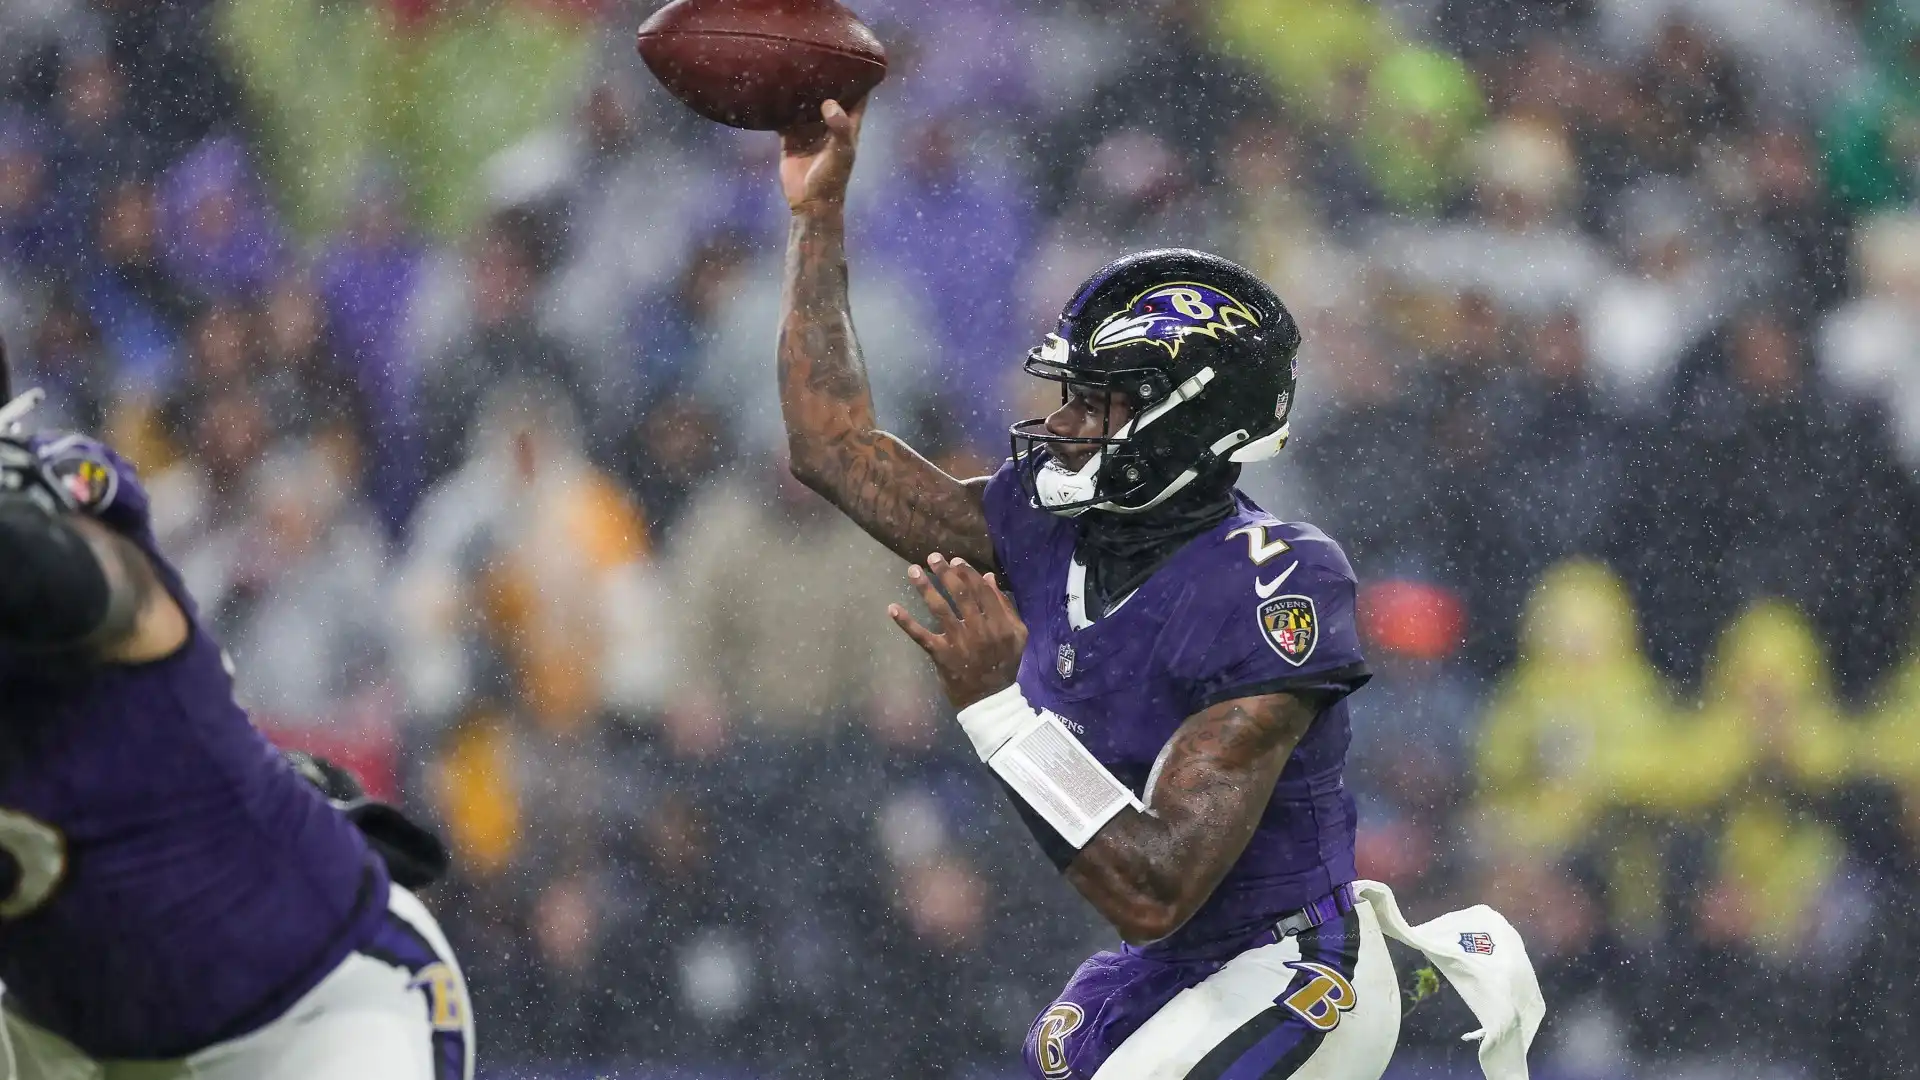 Ravens vs Chiefs: Jackson vs Mahomes por el Super Bowl 58 - Actualizaciones EN VIVO